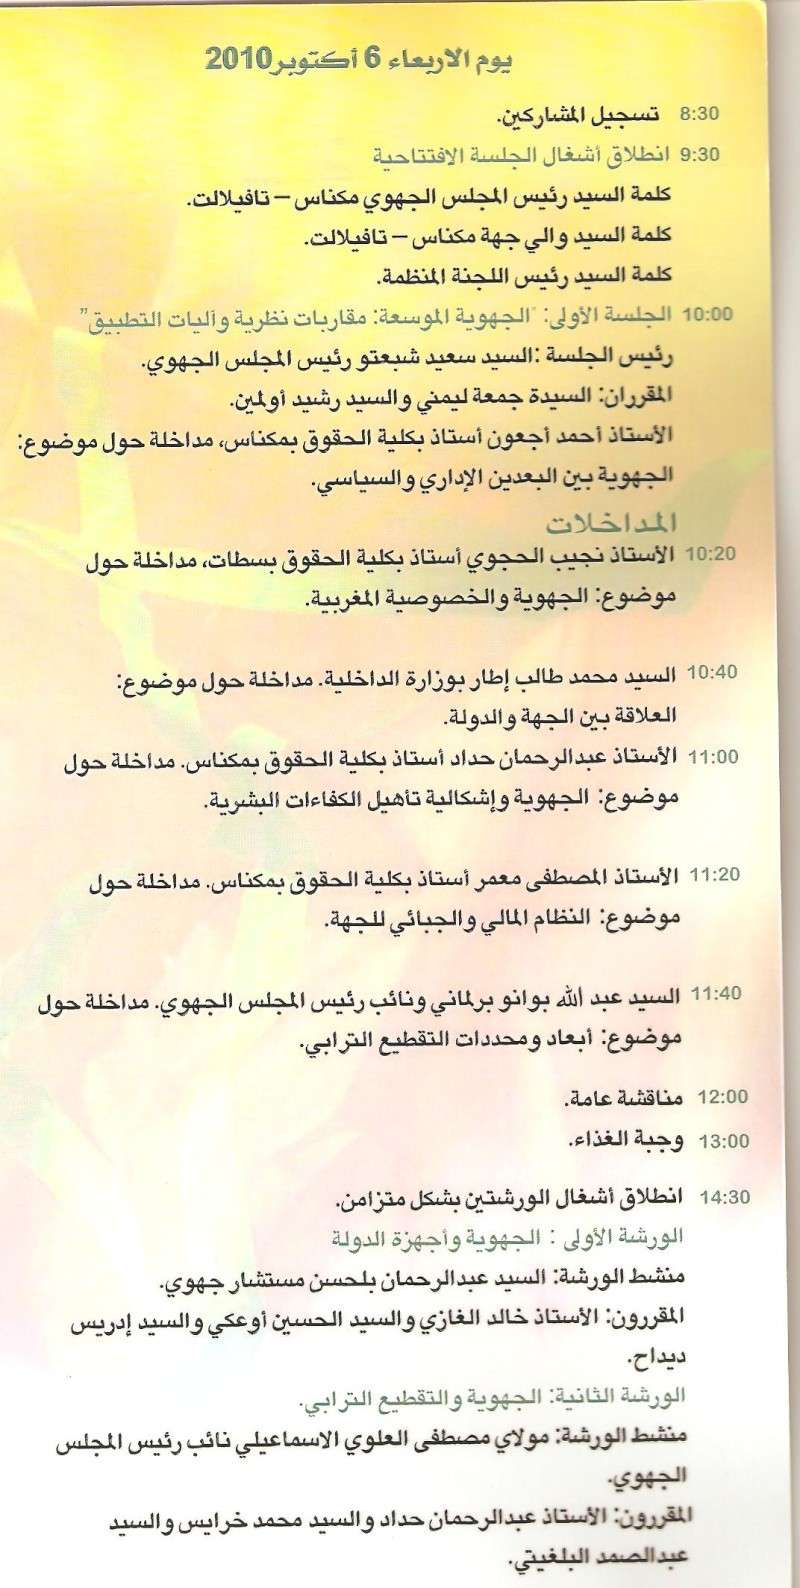 المجلس الجهوي مكناس تافيلالت:ينظم يومين دراسيين حول: الجهوية الموسعة بالمغرب 6 و7 أكتوبر  Aljhaw13